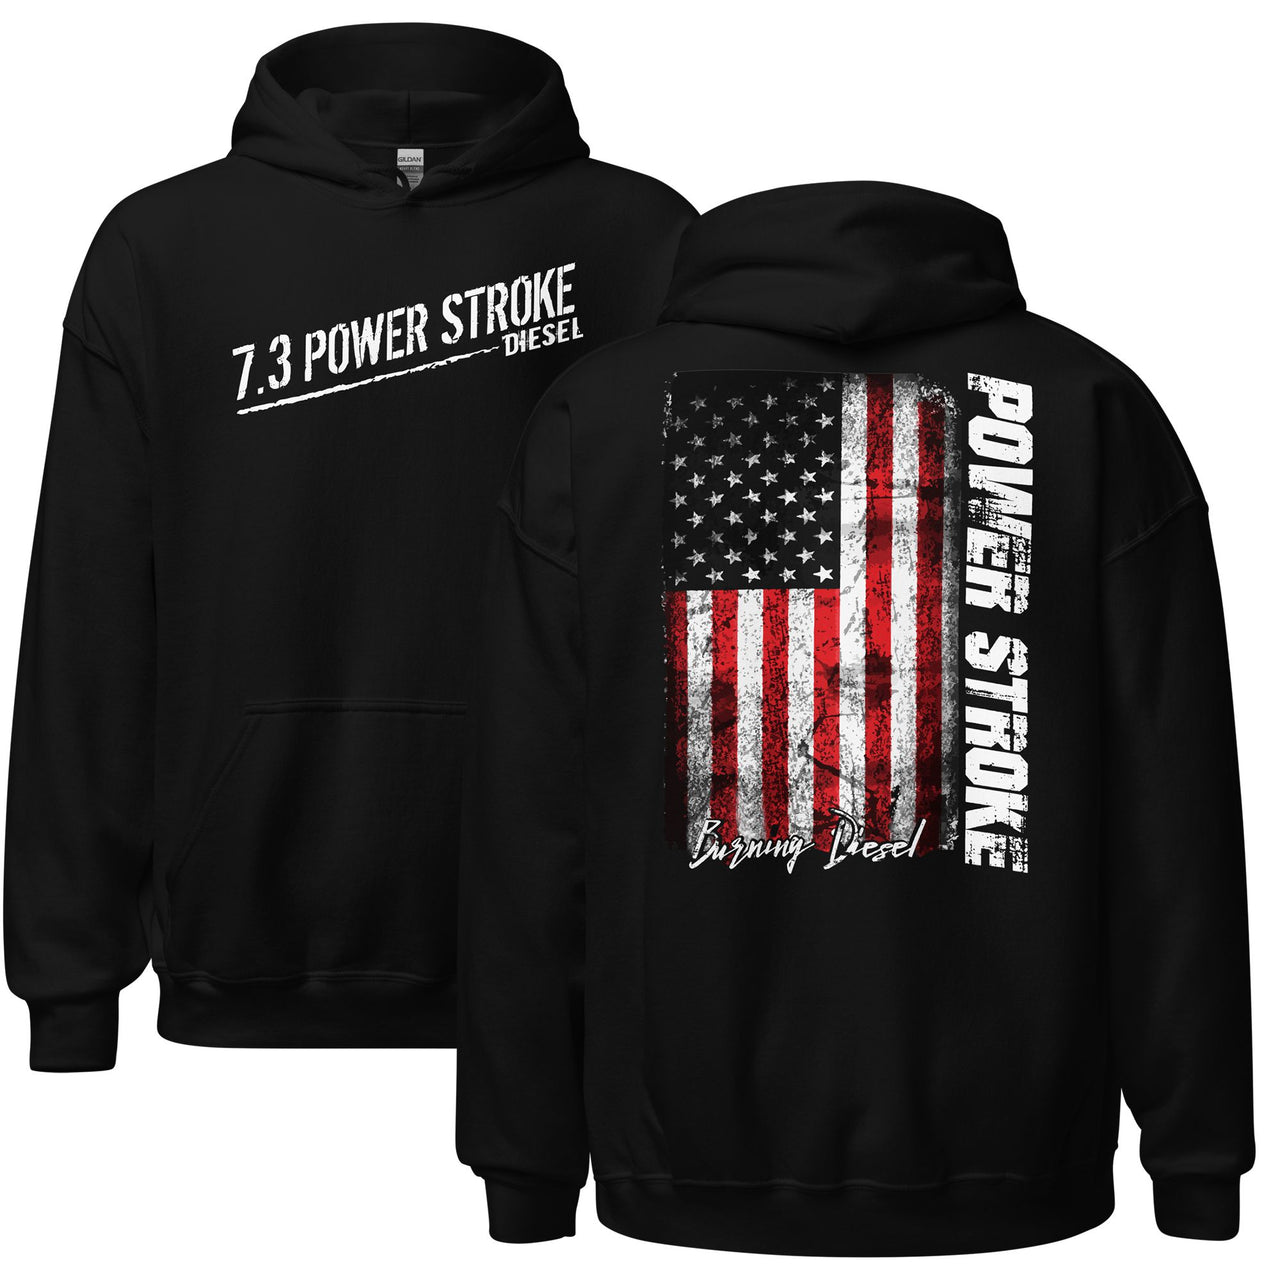 7.3 Power Stroke Diesel Hoodie, American Flag Sweatshirt in black